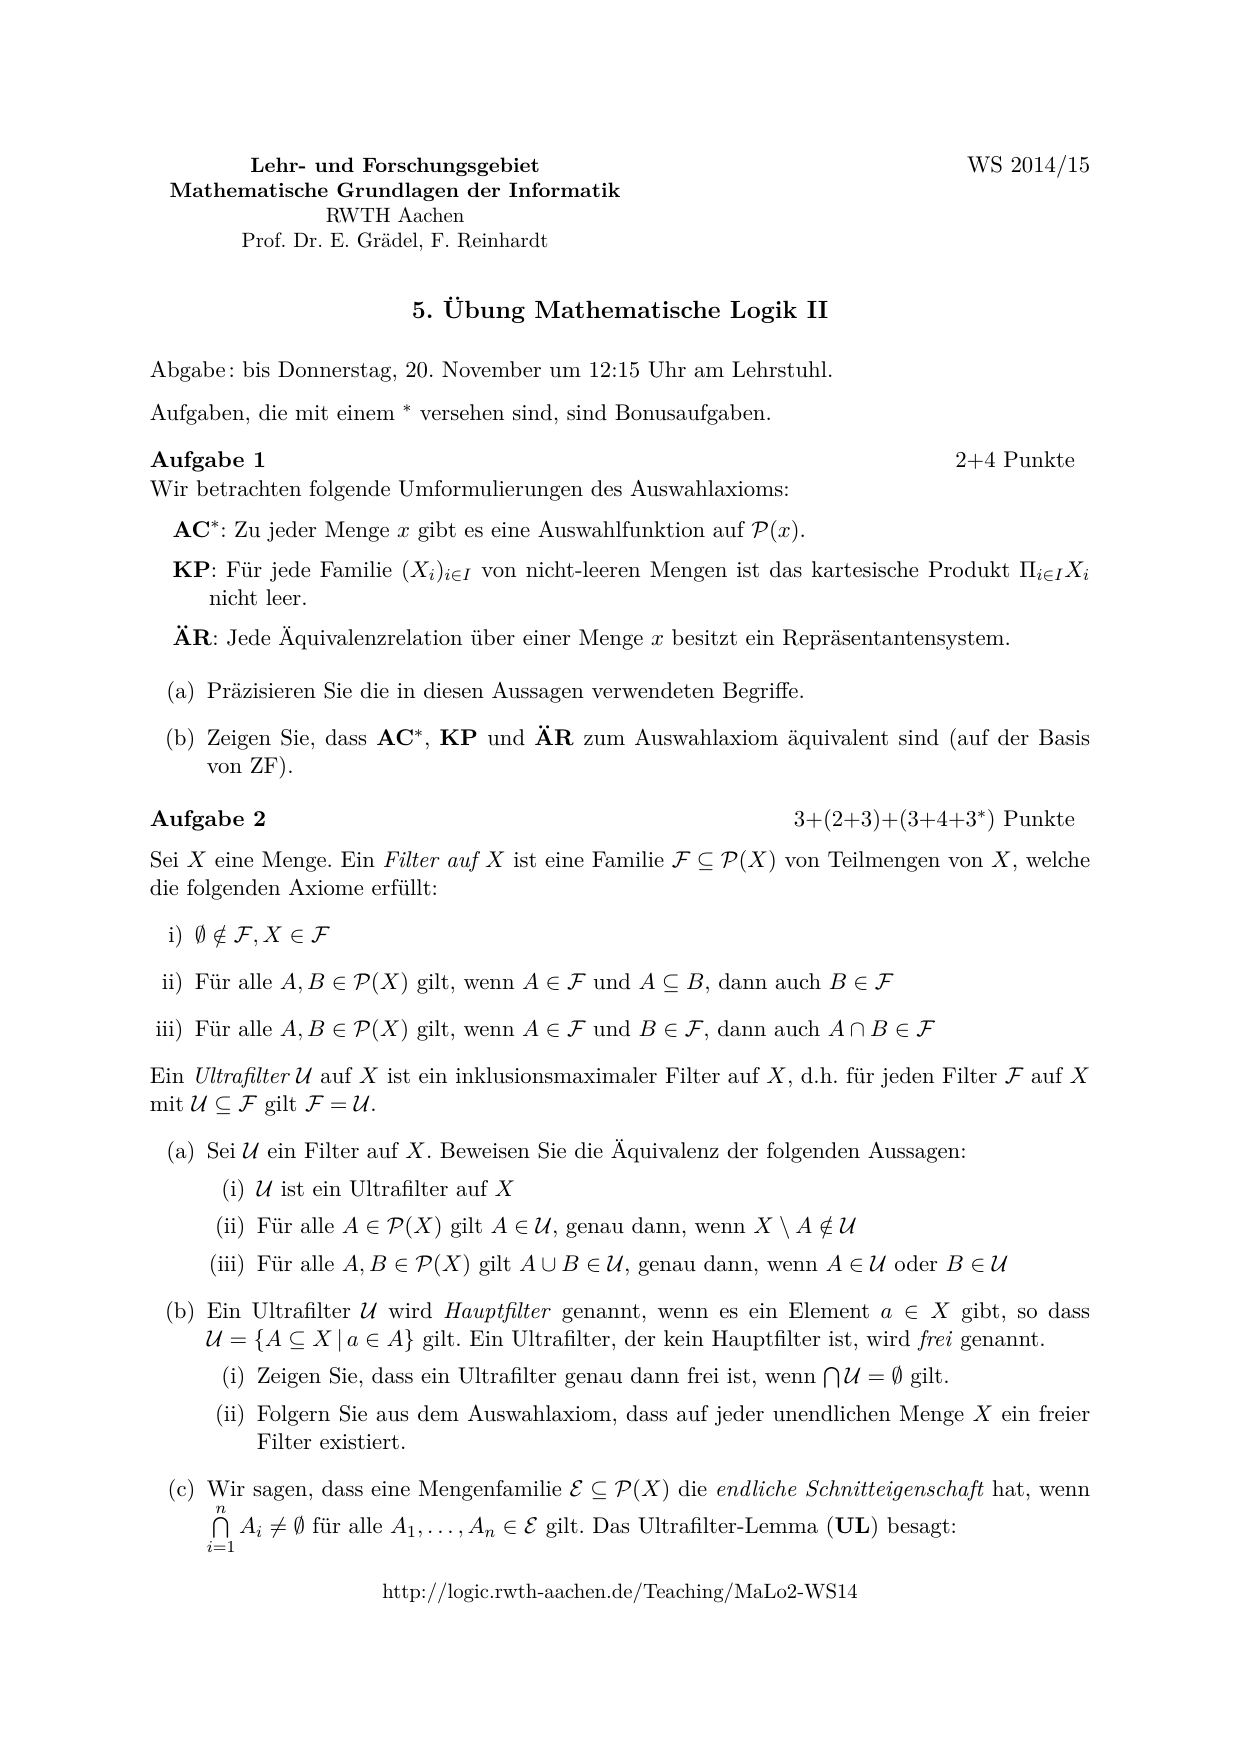 5 Ubung Mathematische Logik Ii